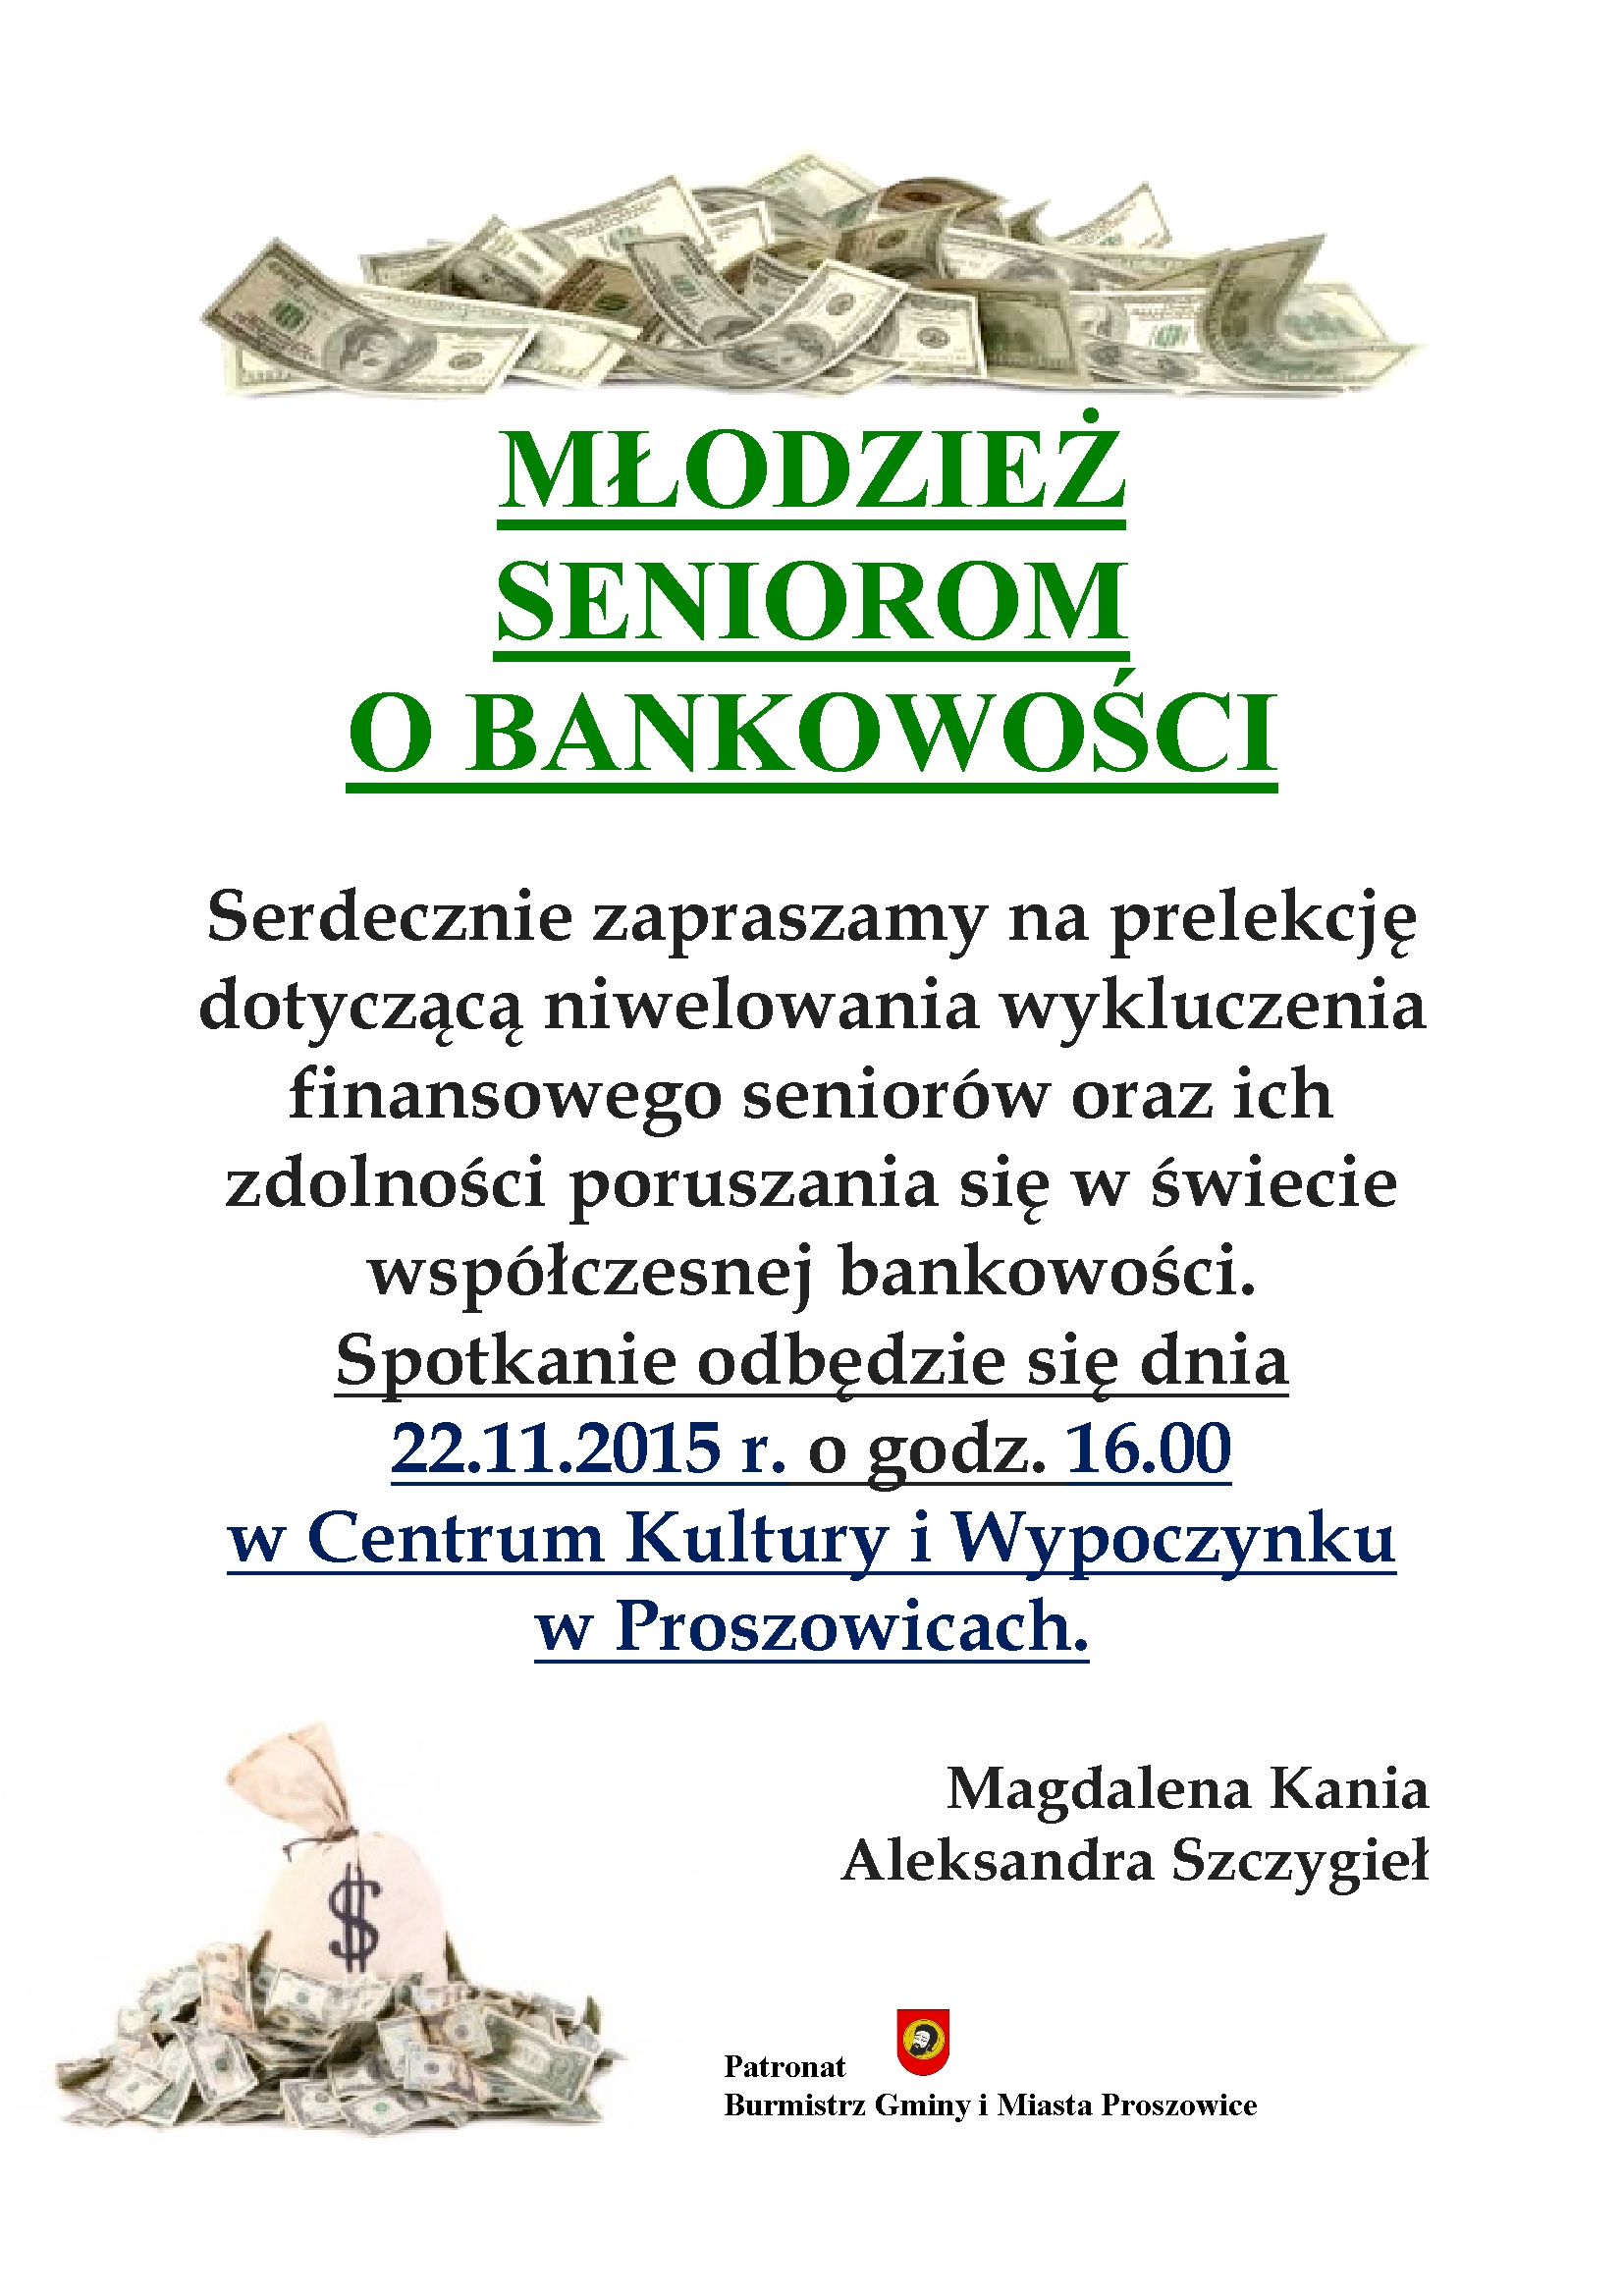 Plakat - zaproszenie do prelekcji nt. bankowości dla seniorów